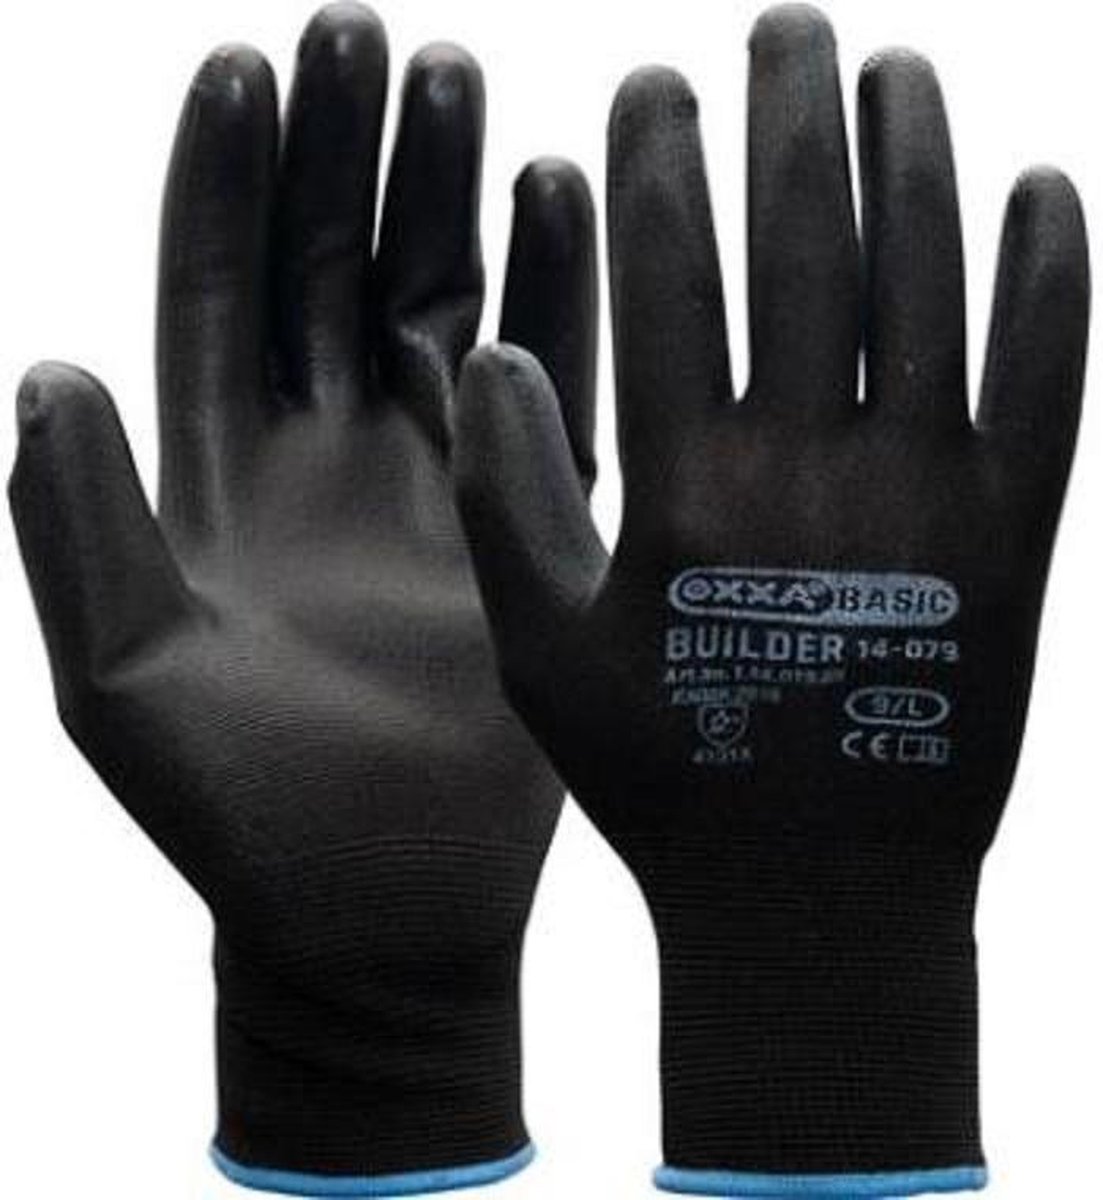 OXXA® Builder 14-079 PU/polyester handschoenen - Zwart - 12 paar - maat 9/L